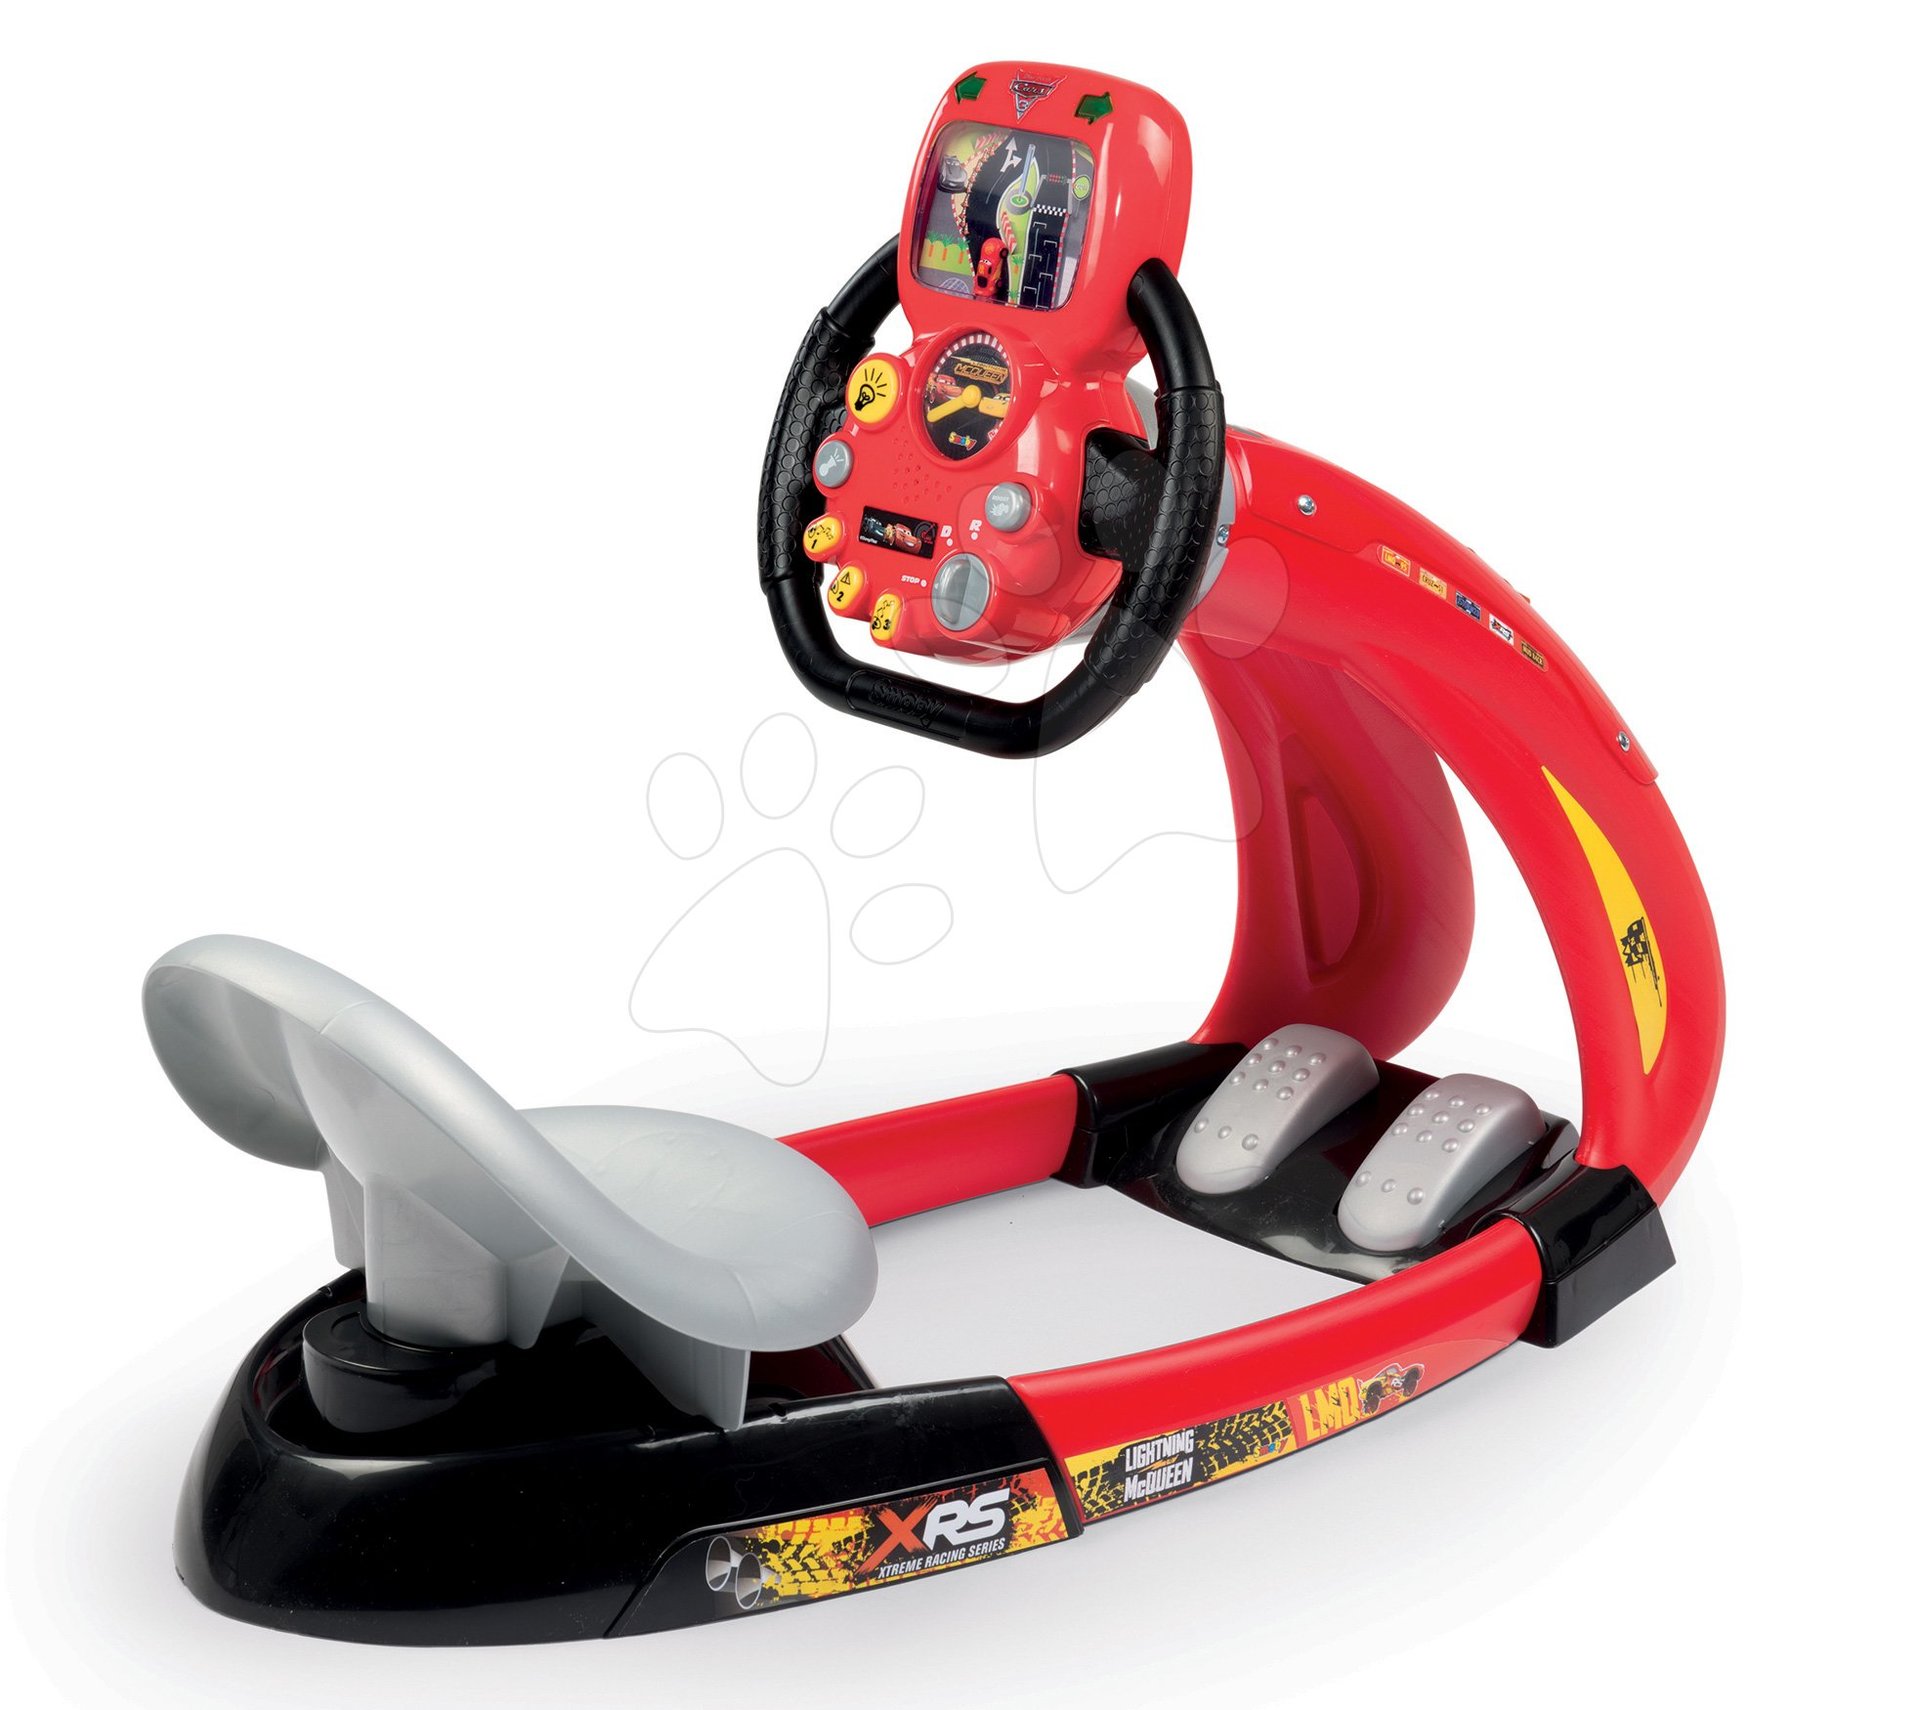 Trenažér pro děti - Trenažér Flash McQueen Cars XRS Smoby elektronický se závodním simulátorem